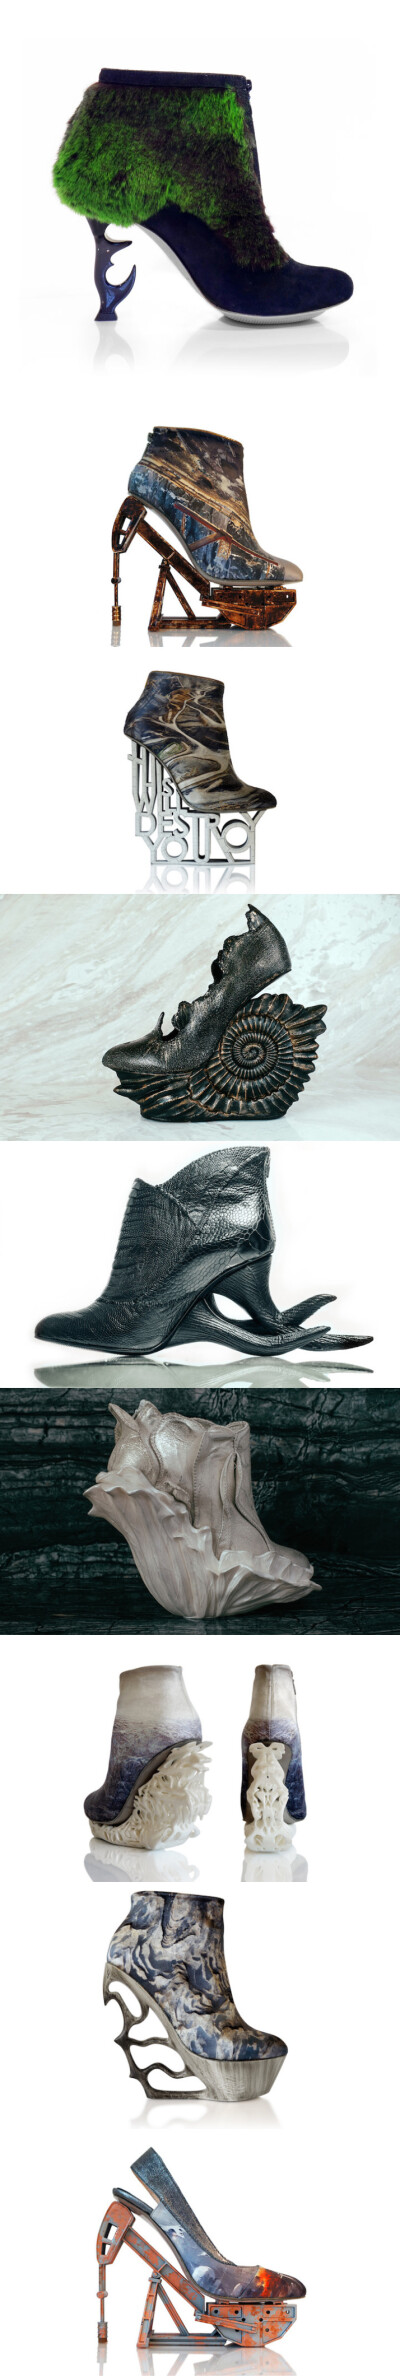 幻想，反乌托邦和鞋子 | 加拿大蒙特利尔鞋子设计师 Anastasia Radevich